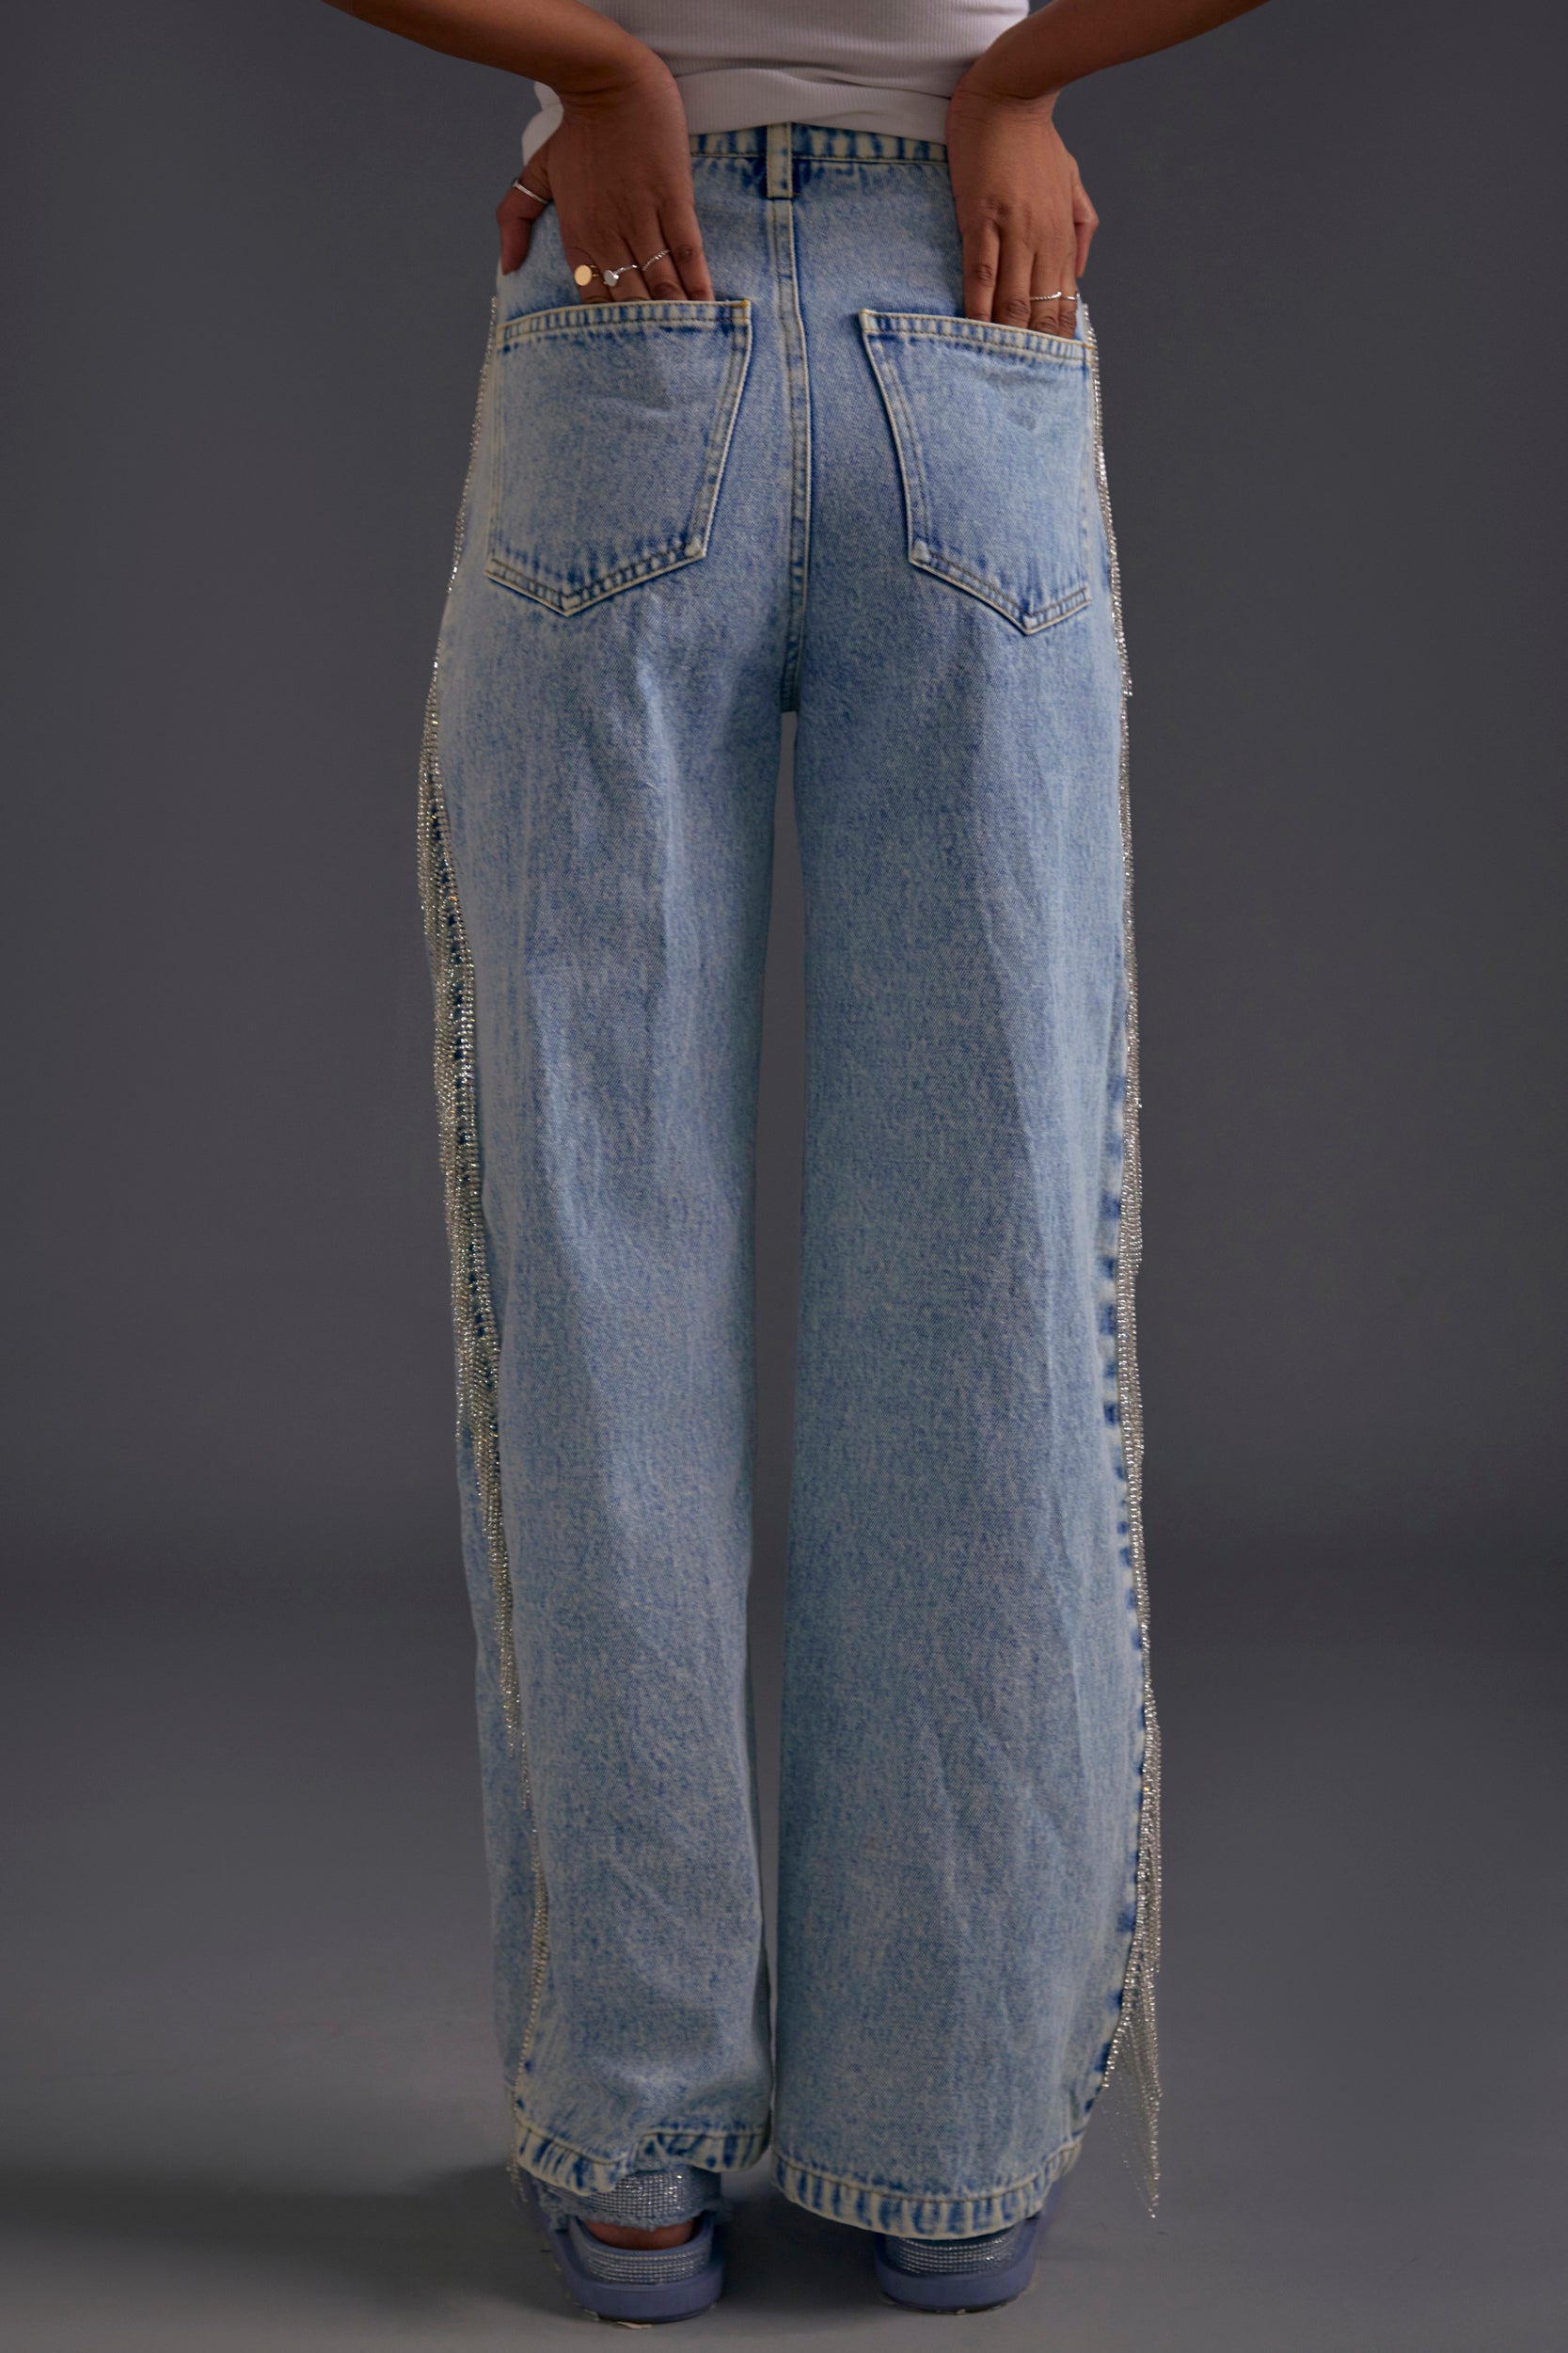 Rhinestone Embellished Blue Jeans